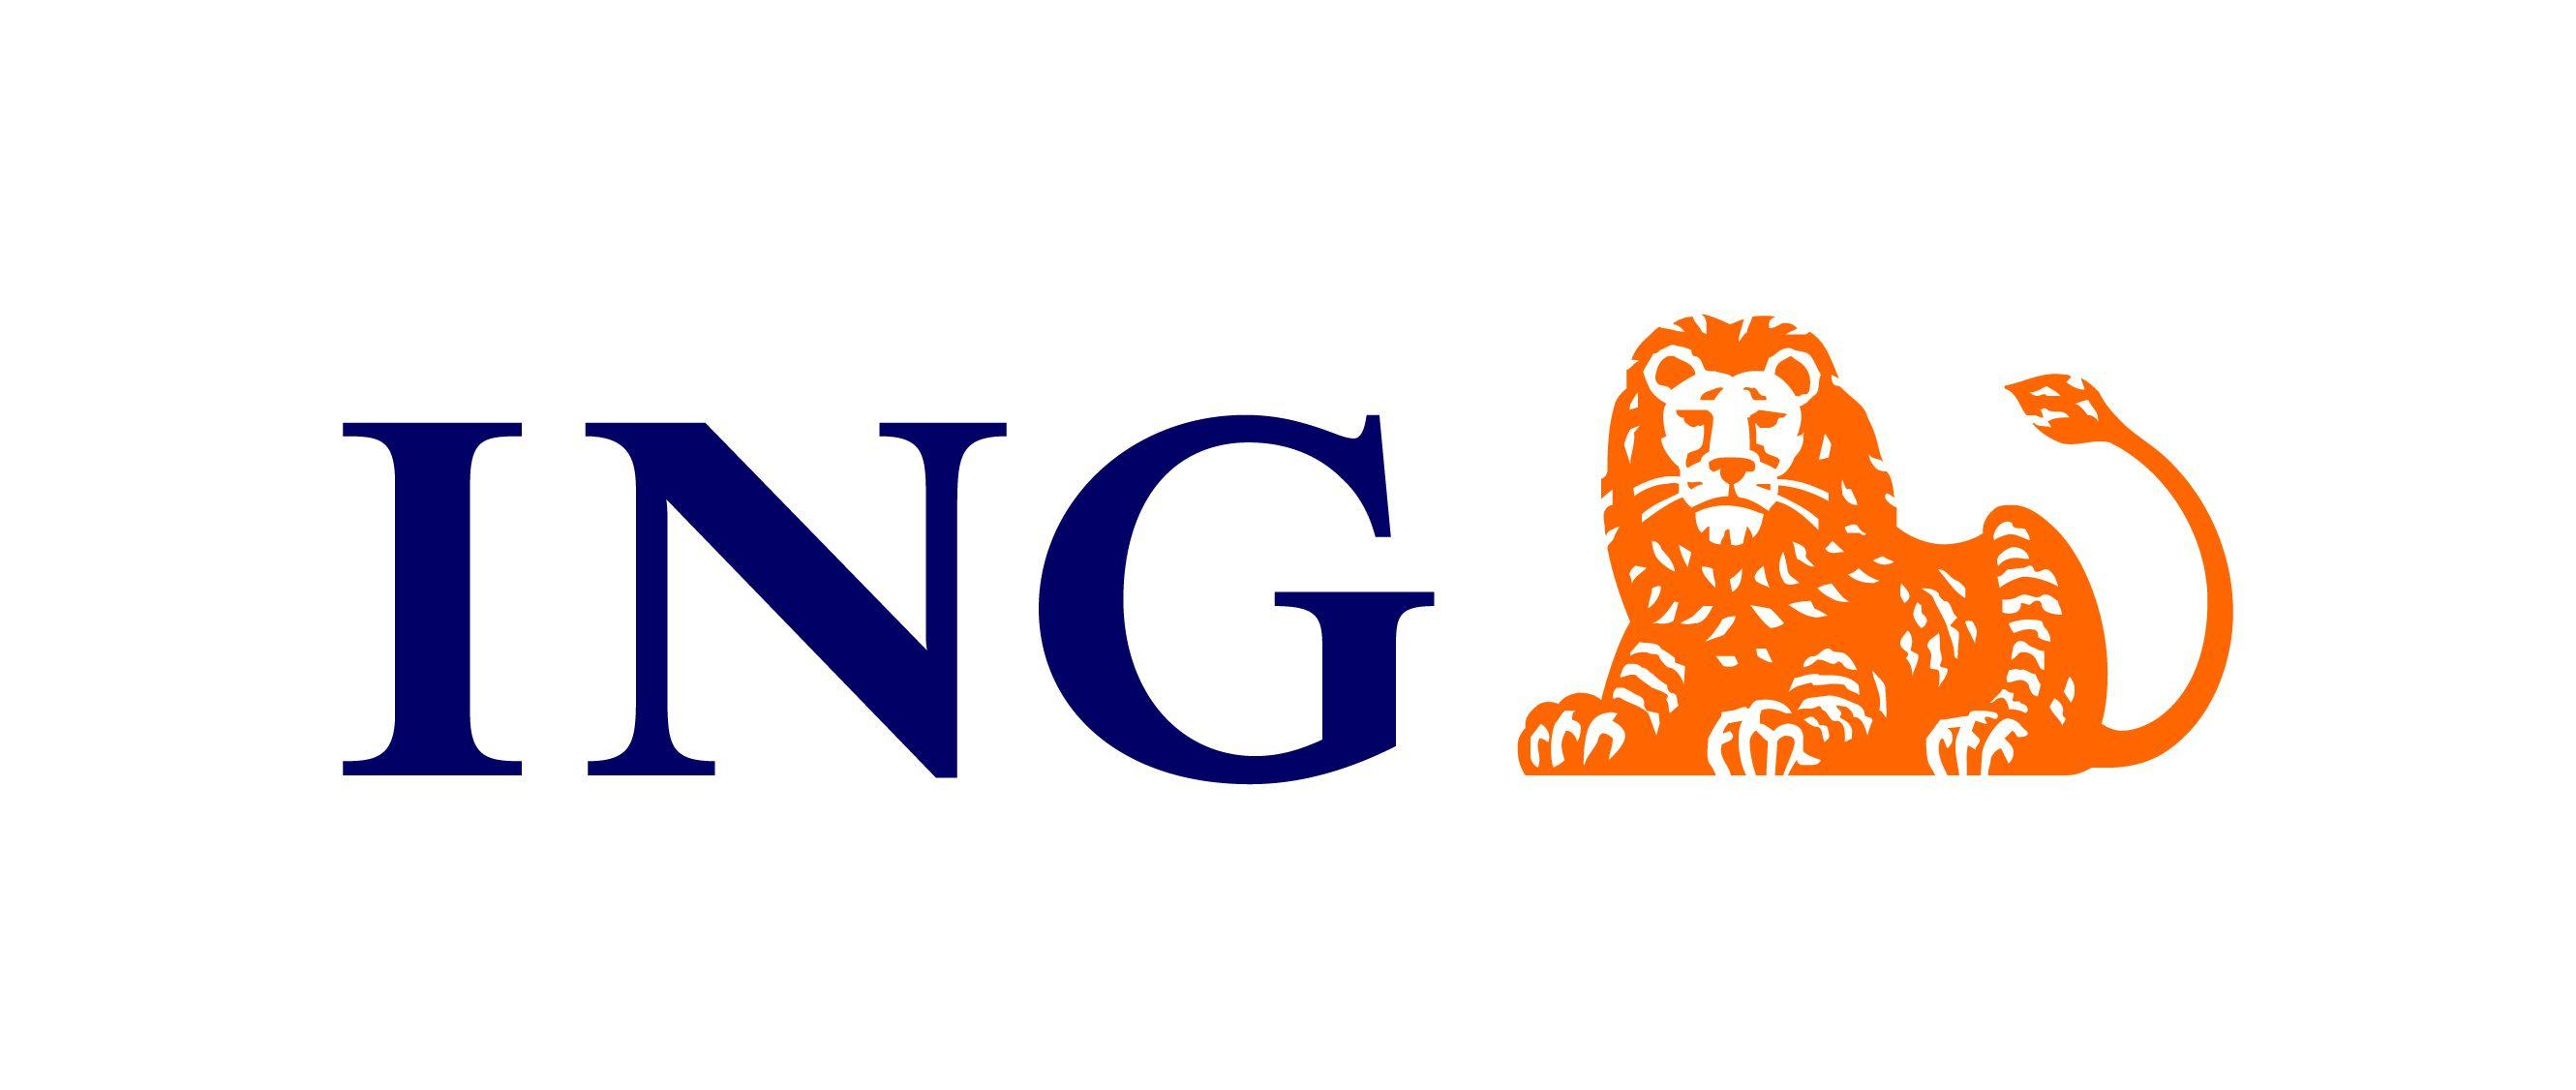 ING Logo - File:ING logo.jpg - Wikimedia Commons